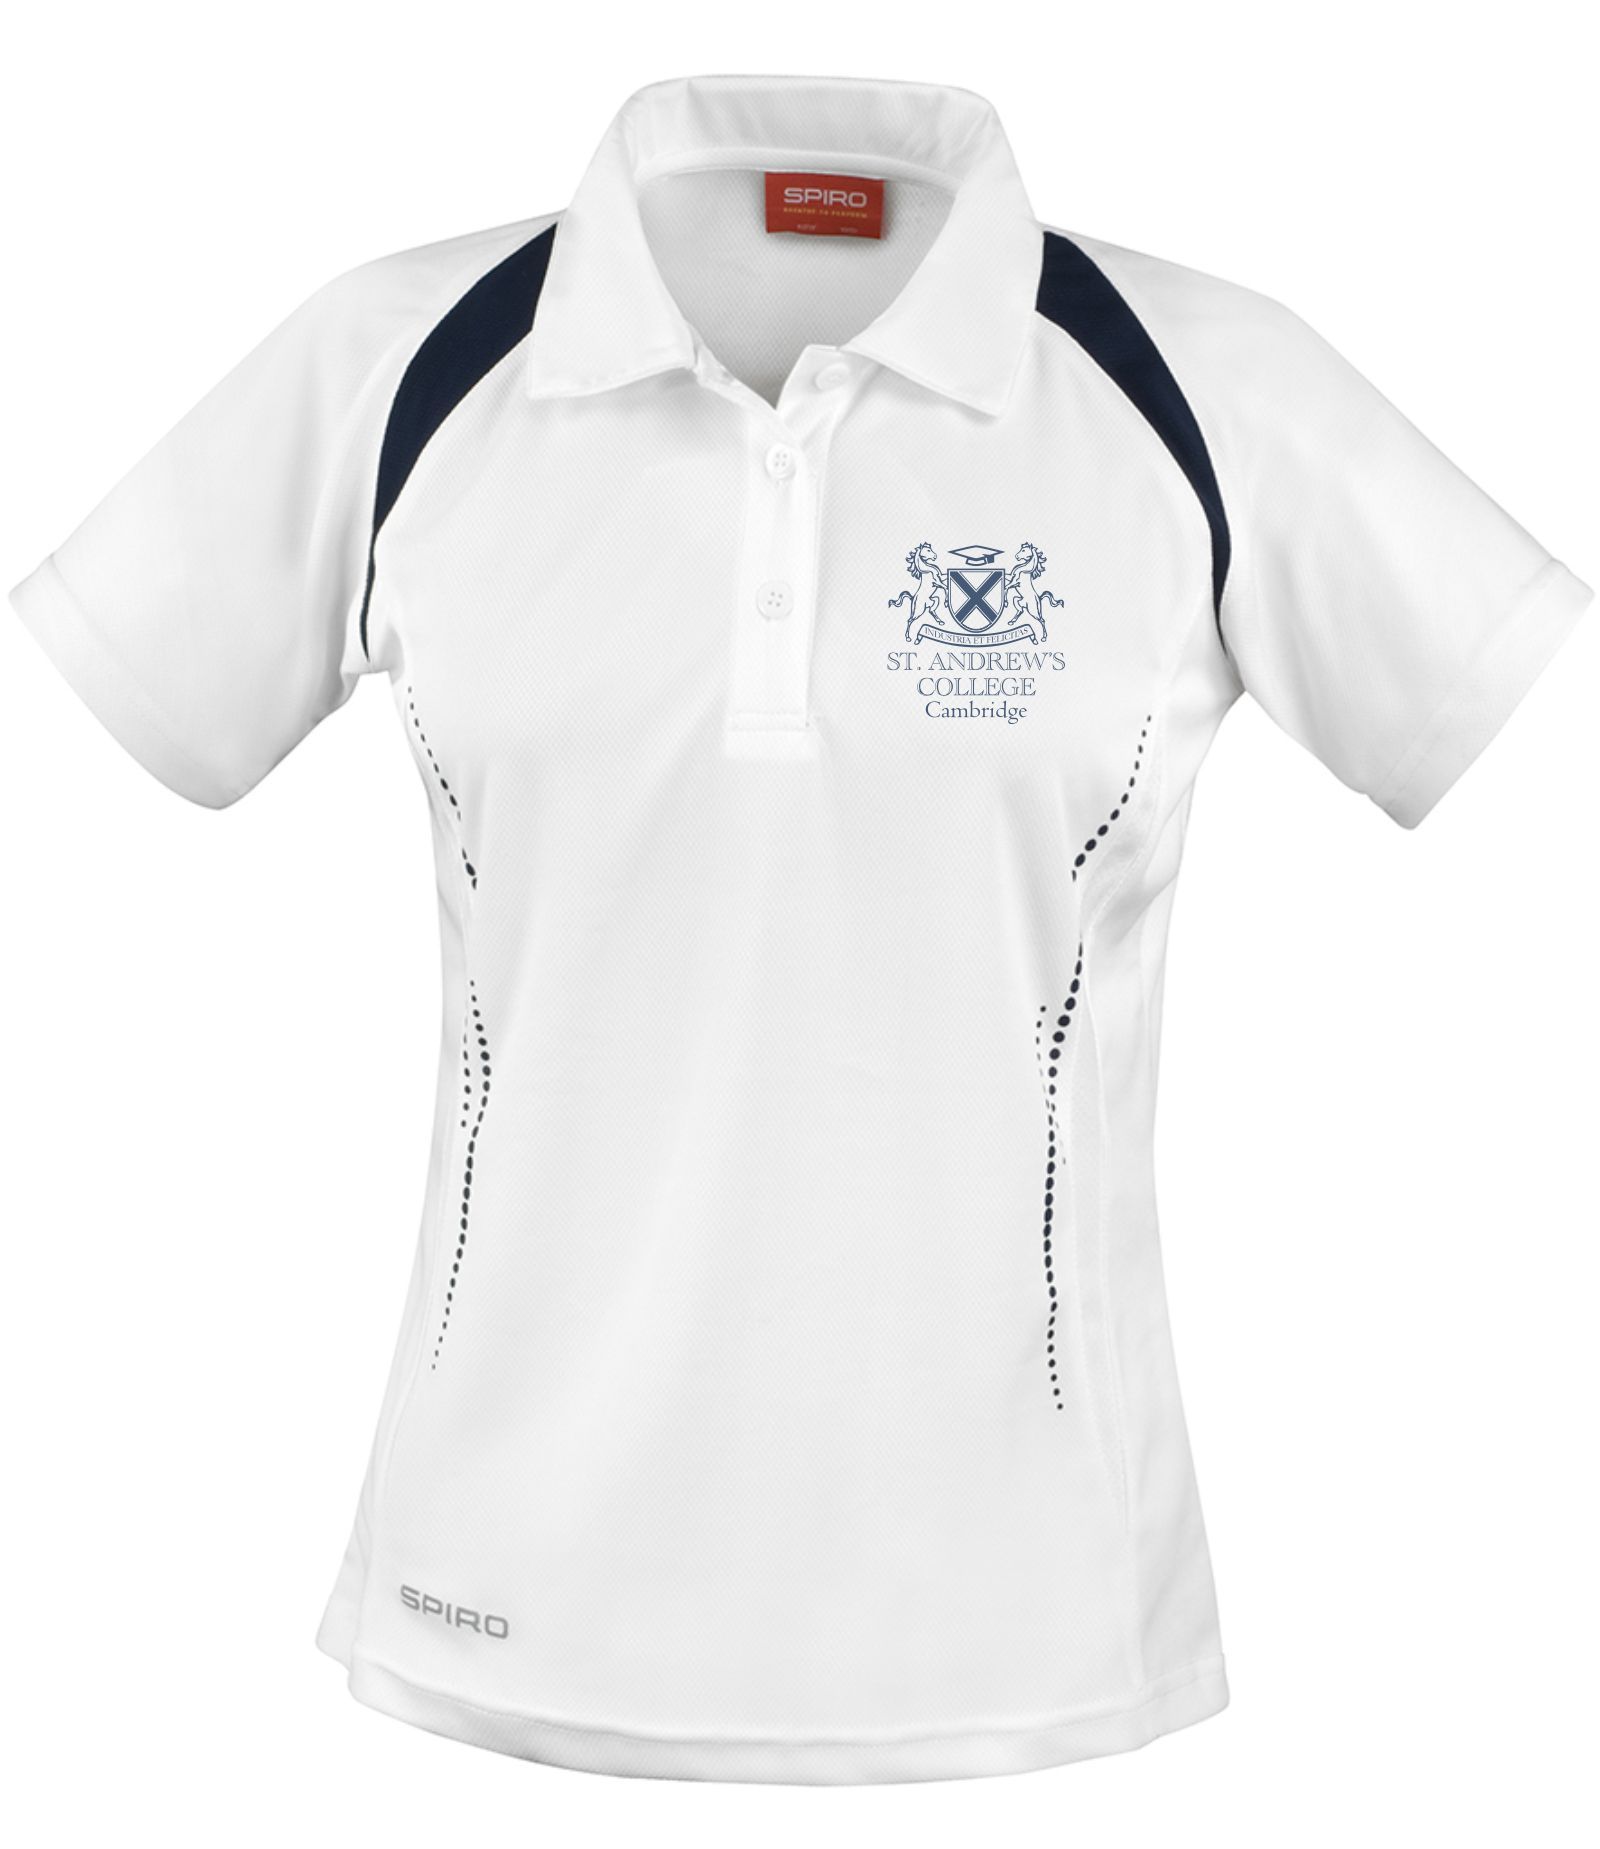 St Andrew's College Cambridge - Polo shirt (Ladies)